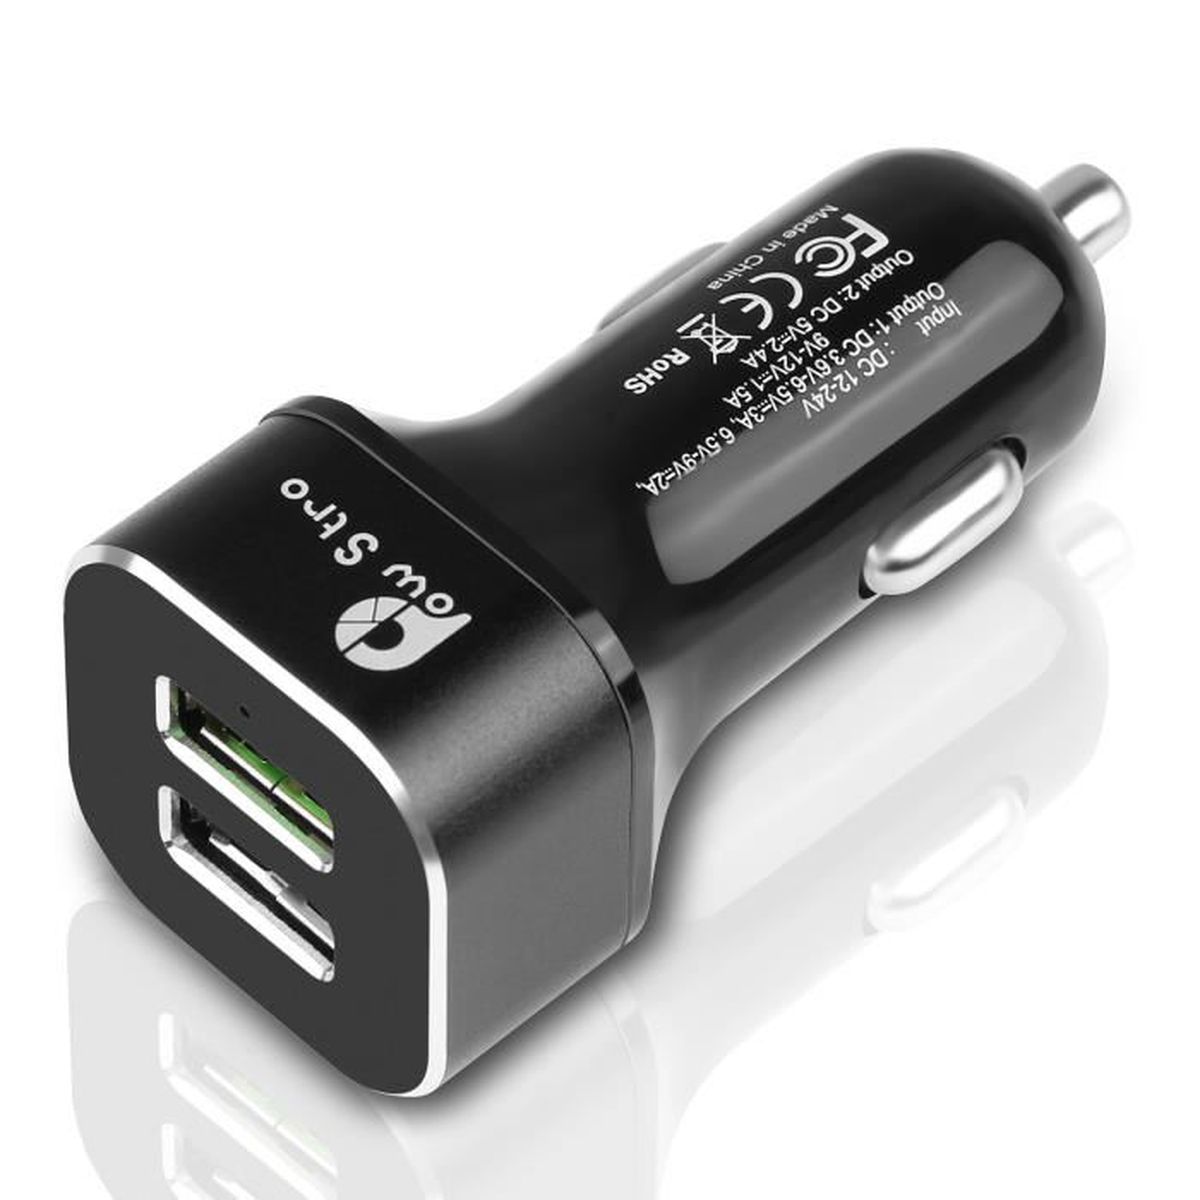 Delleu Mini Chargeur de Voiture Double Port USB Adaptateur de Voiture Chargeur Rapide Adaptateur de Charge Rapide 2 Ports